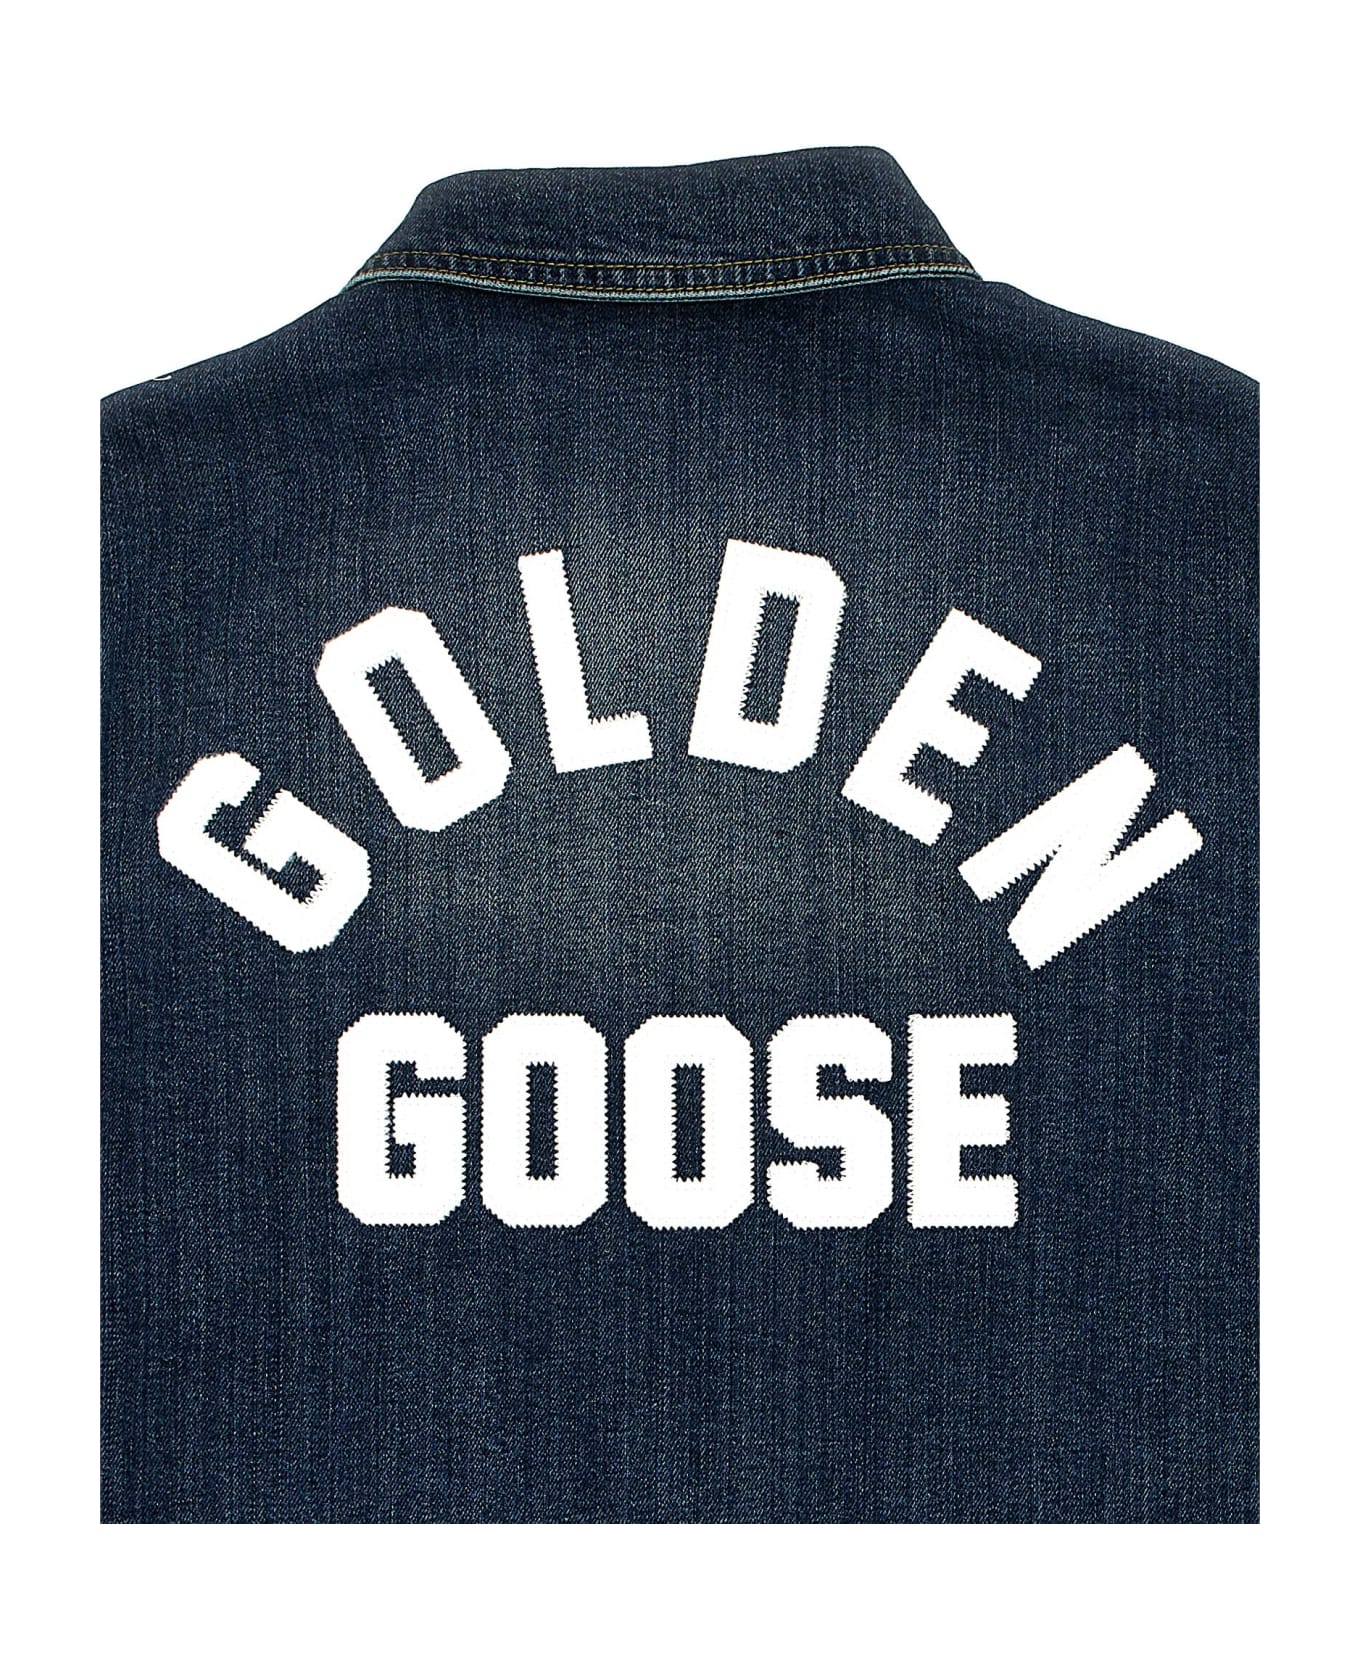 Golden Goose Logo Embroidery Denim Jacket - Blue コート＆ジャケット